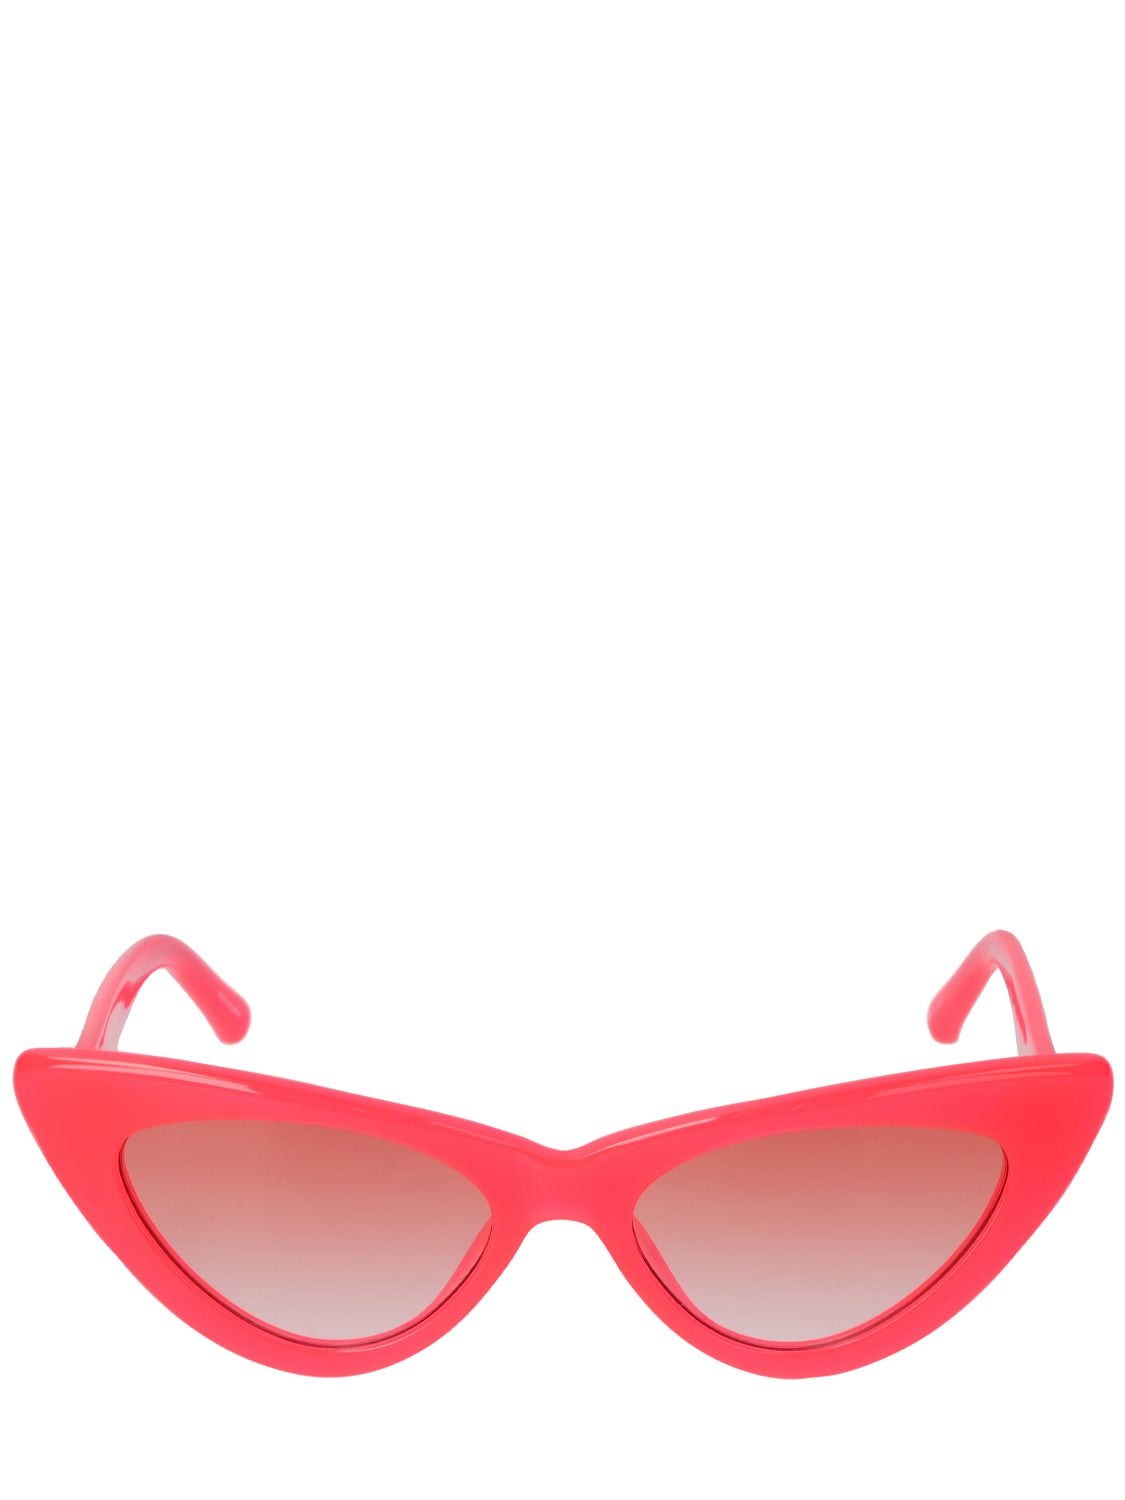 Attico Pink Linda Farrow Edition Dora Sunglasses In Neon Pink